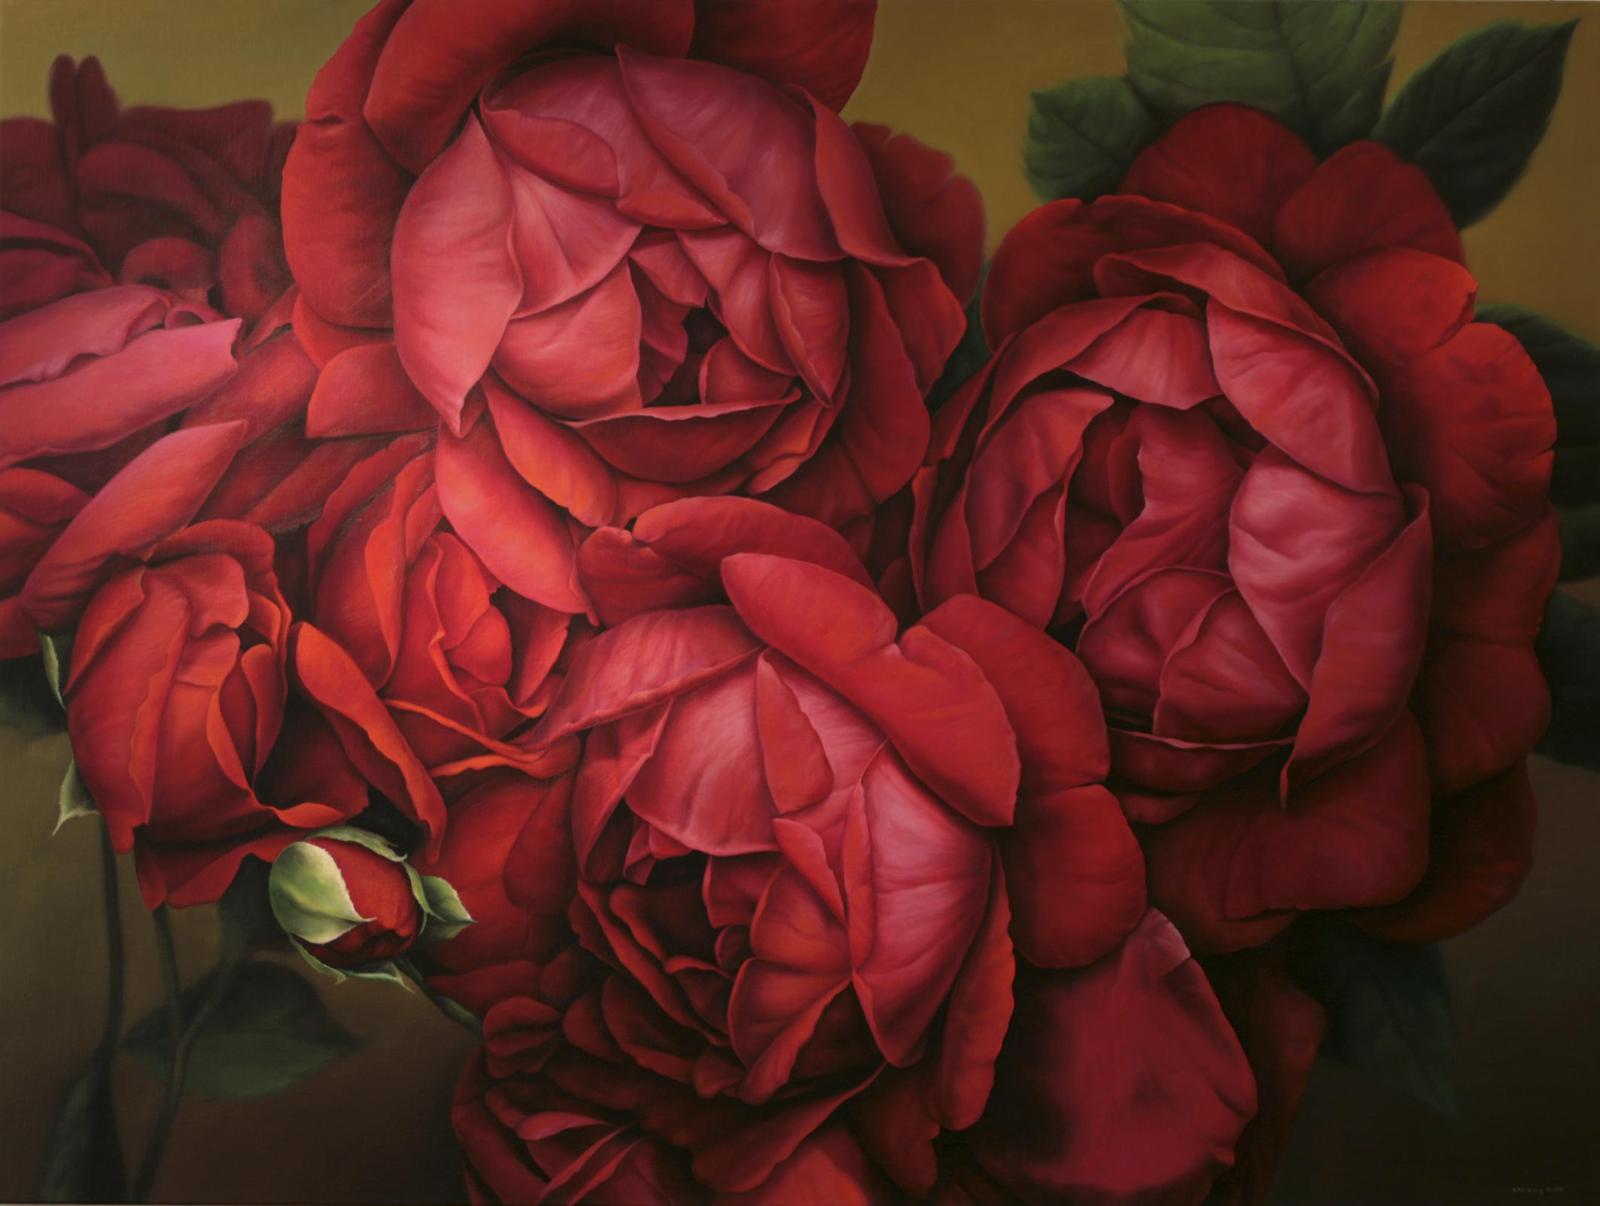 Hermann Försterling, Rote Rosen, Öl auf Leinwand, 150 x 200 cm, derzeit nicht verfügbar, Galerie Cyprian Brenner, föh003ko